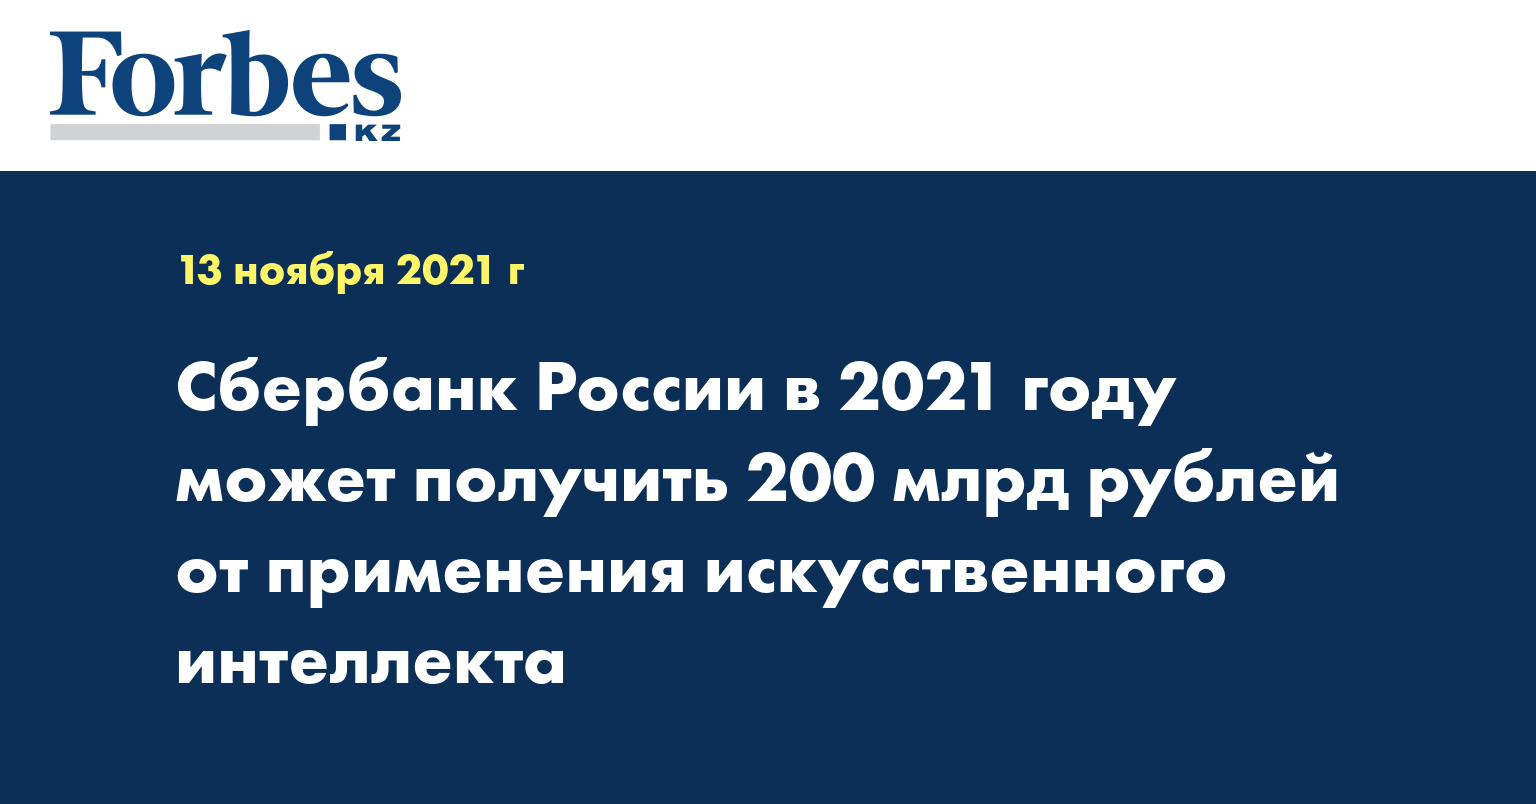 Сбербанк России в 2021 году может получить 200 млрд рублей от применения искусственного интеллекта